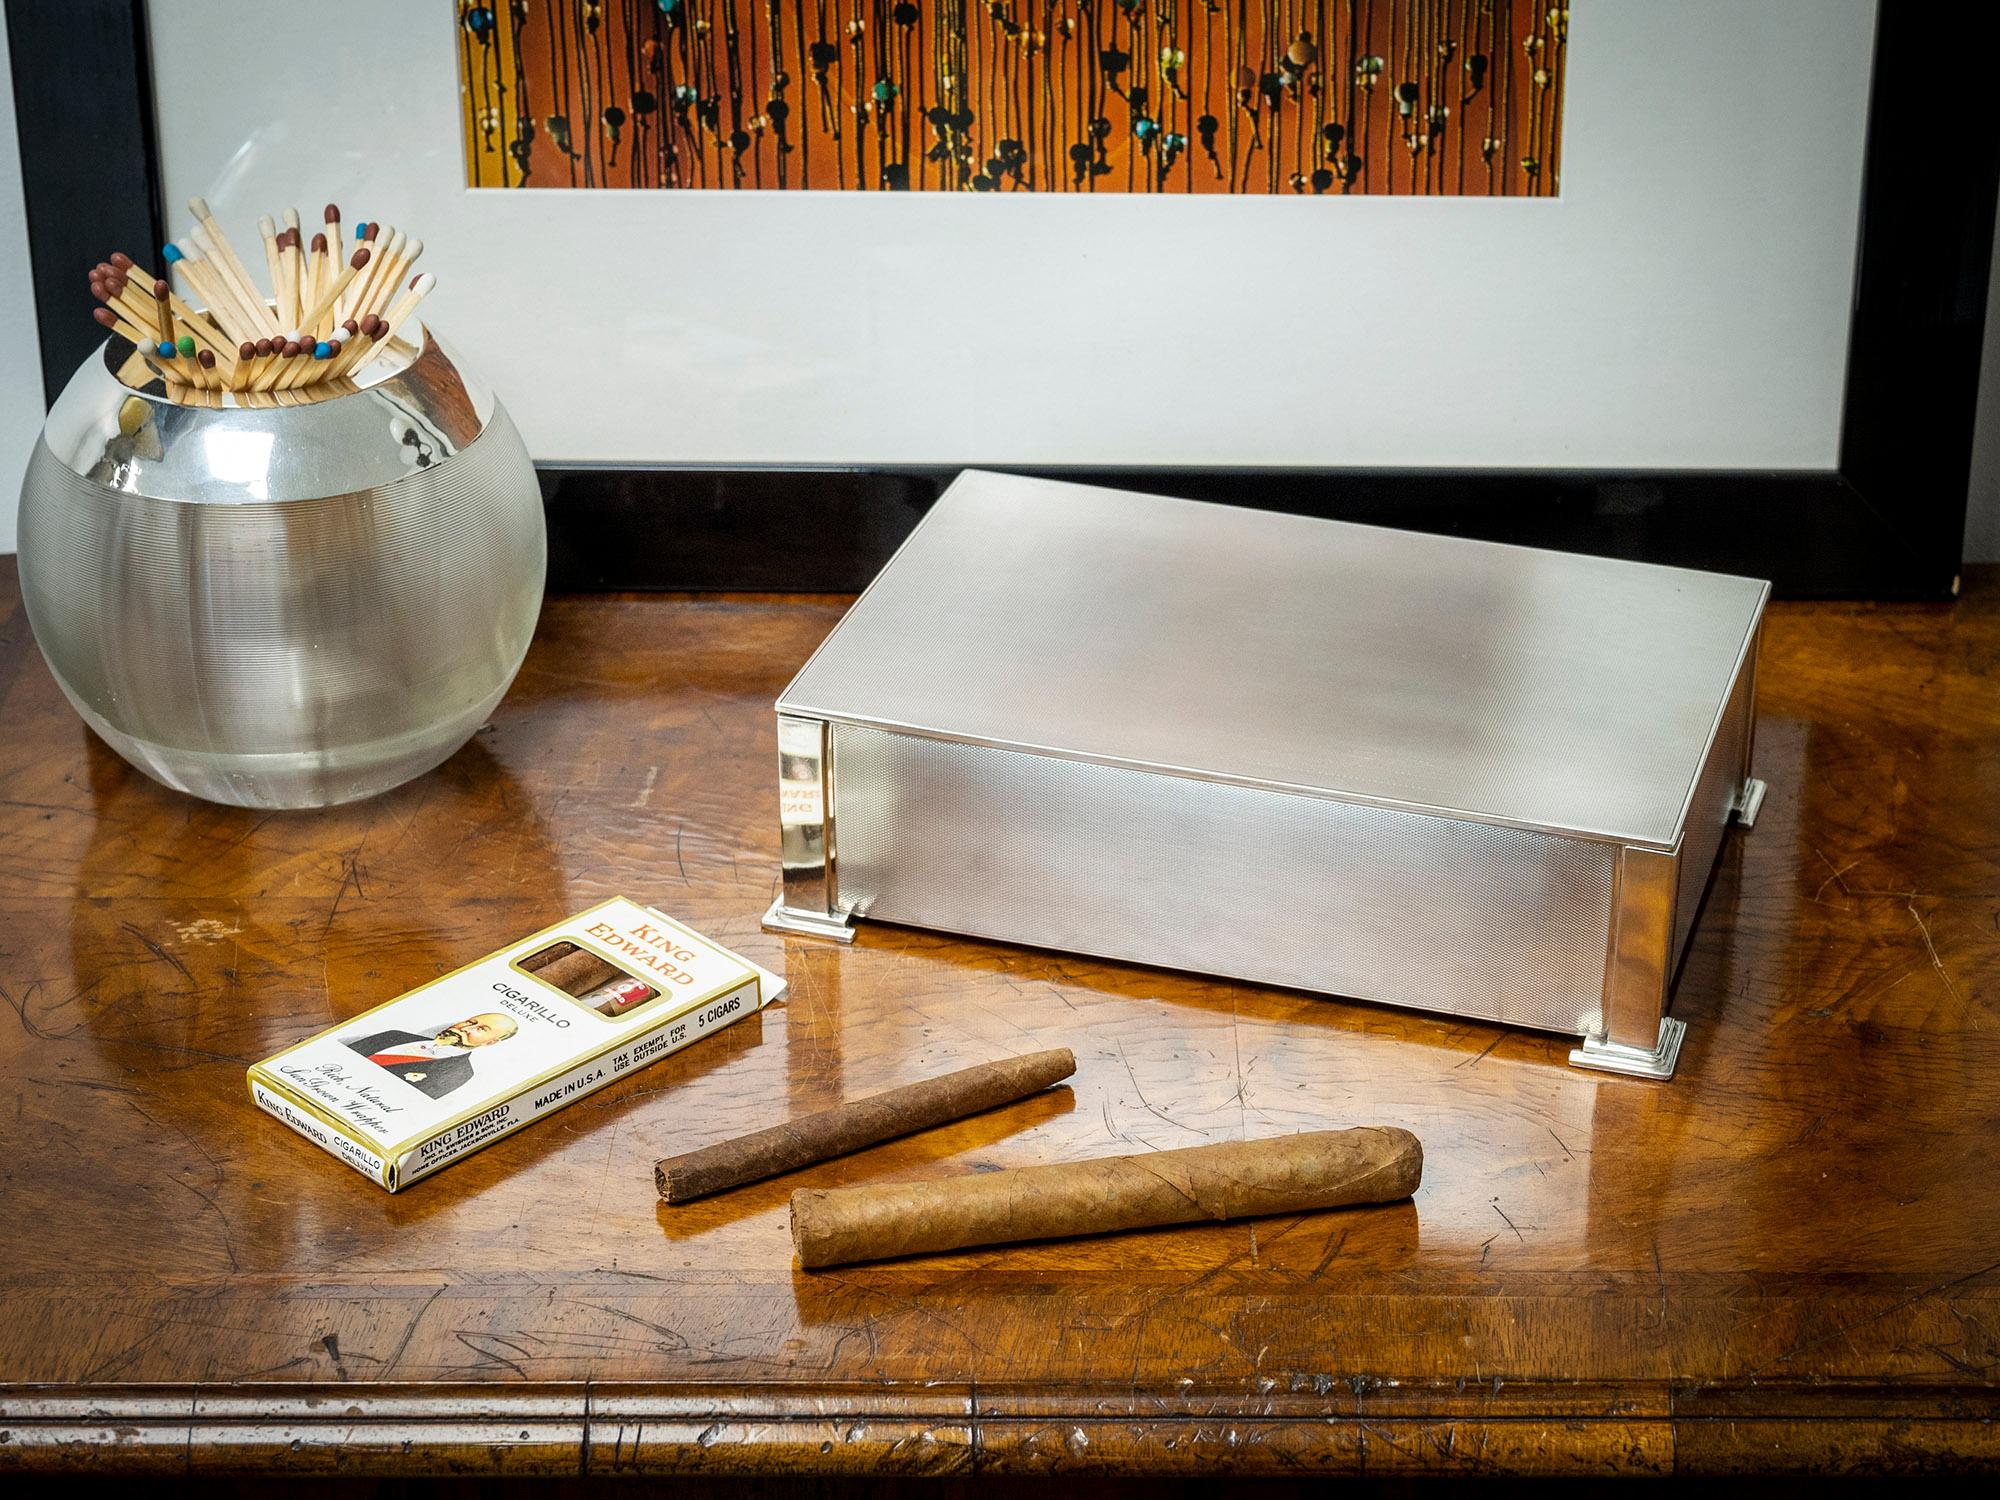 Mit Zedernholzauskleidung

Wir freuen uns, Ihnen diese Art Deco Sterling Silber Zigarrenkiste aus unserer Silver Collection anbieten zu können. Die Zigarrenkiste in rechteckiger Form aus Sterlingsilber verfügt über gedrechselte Paneele mit